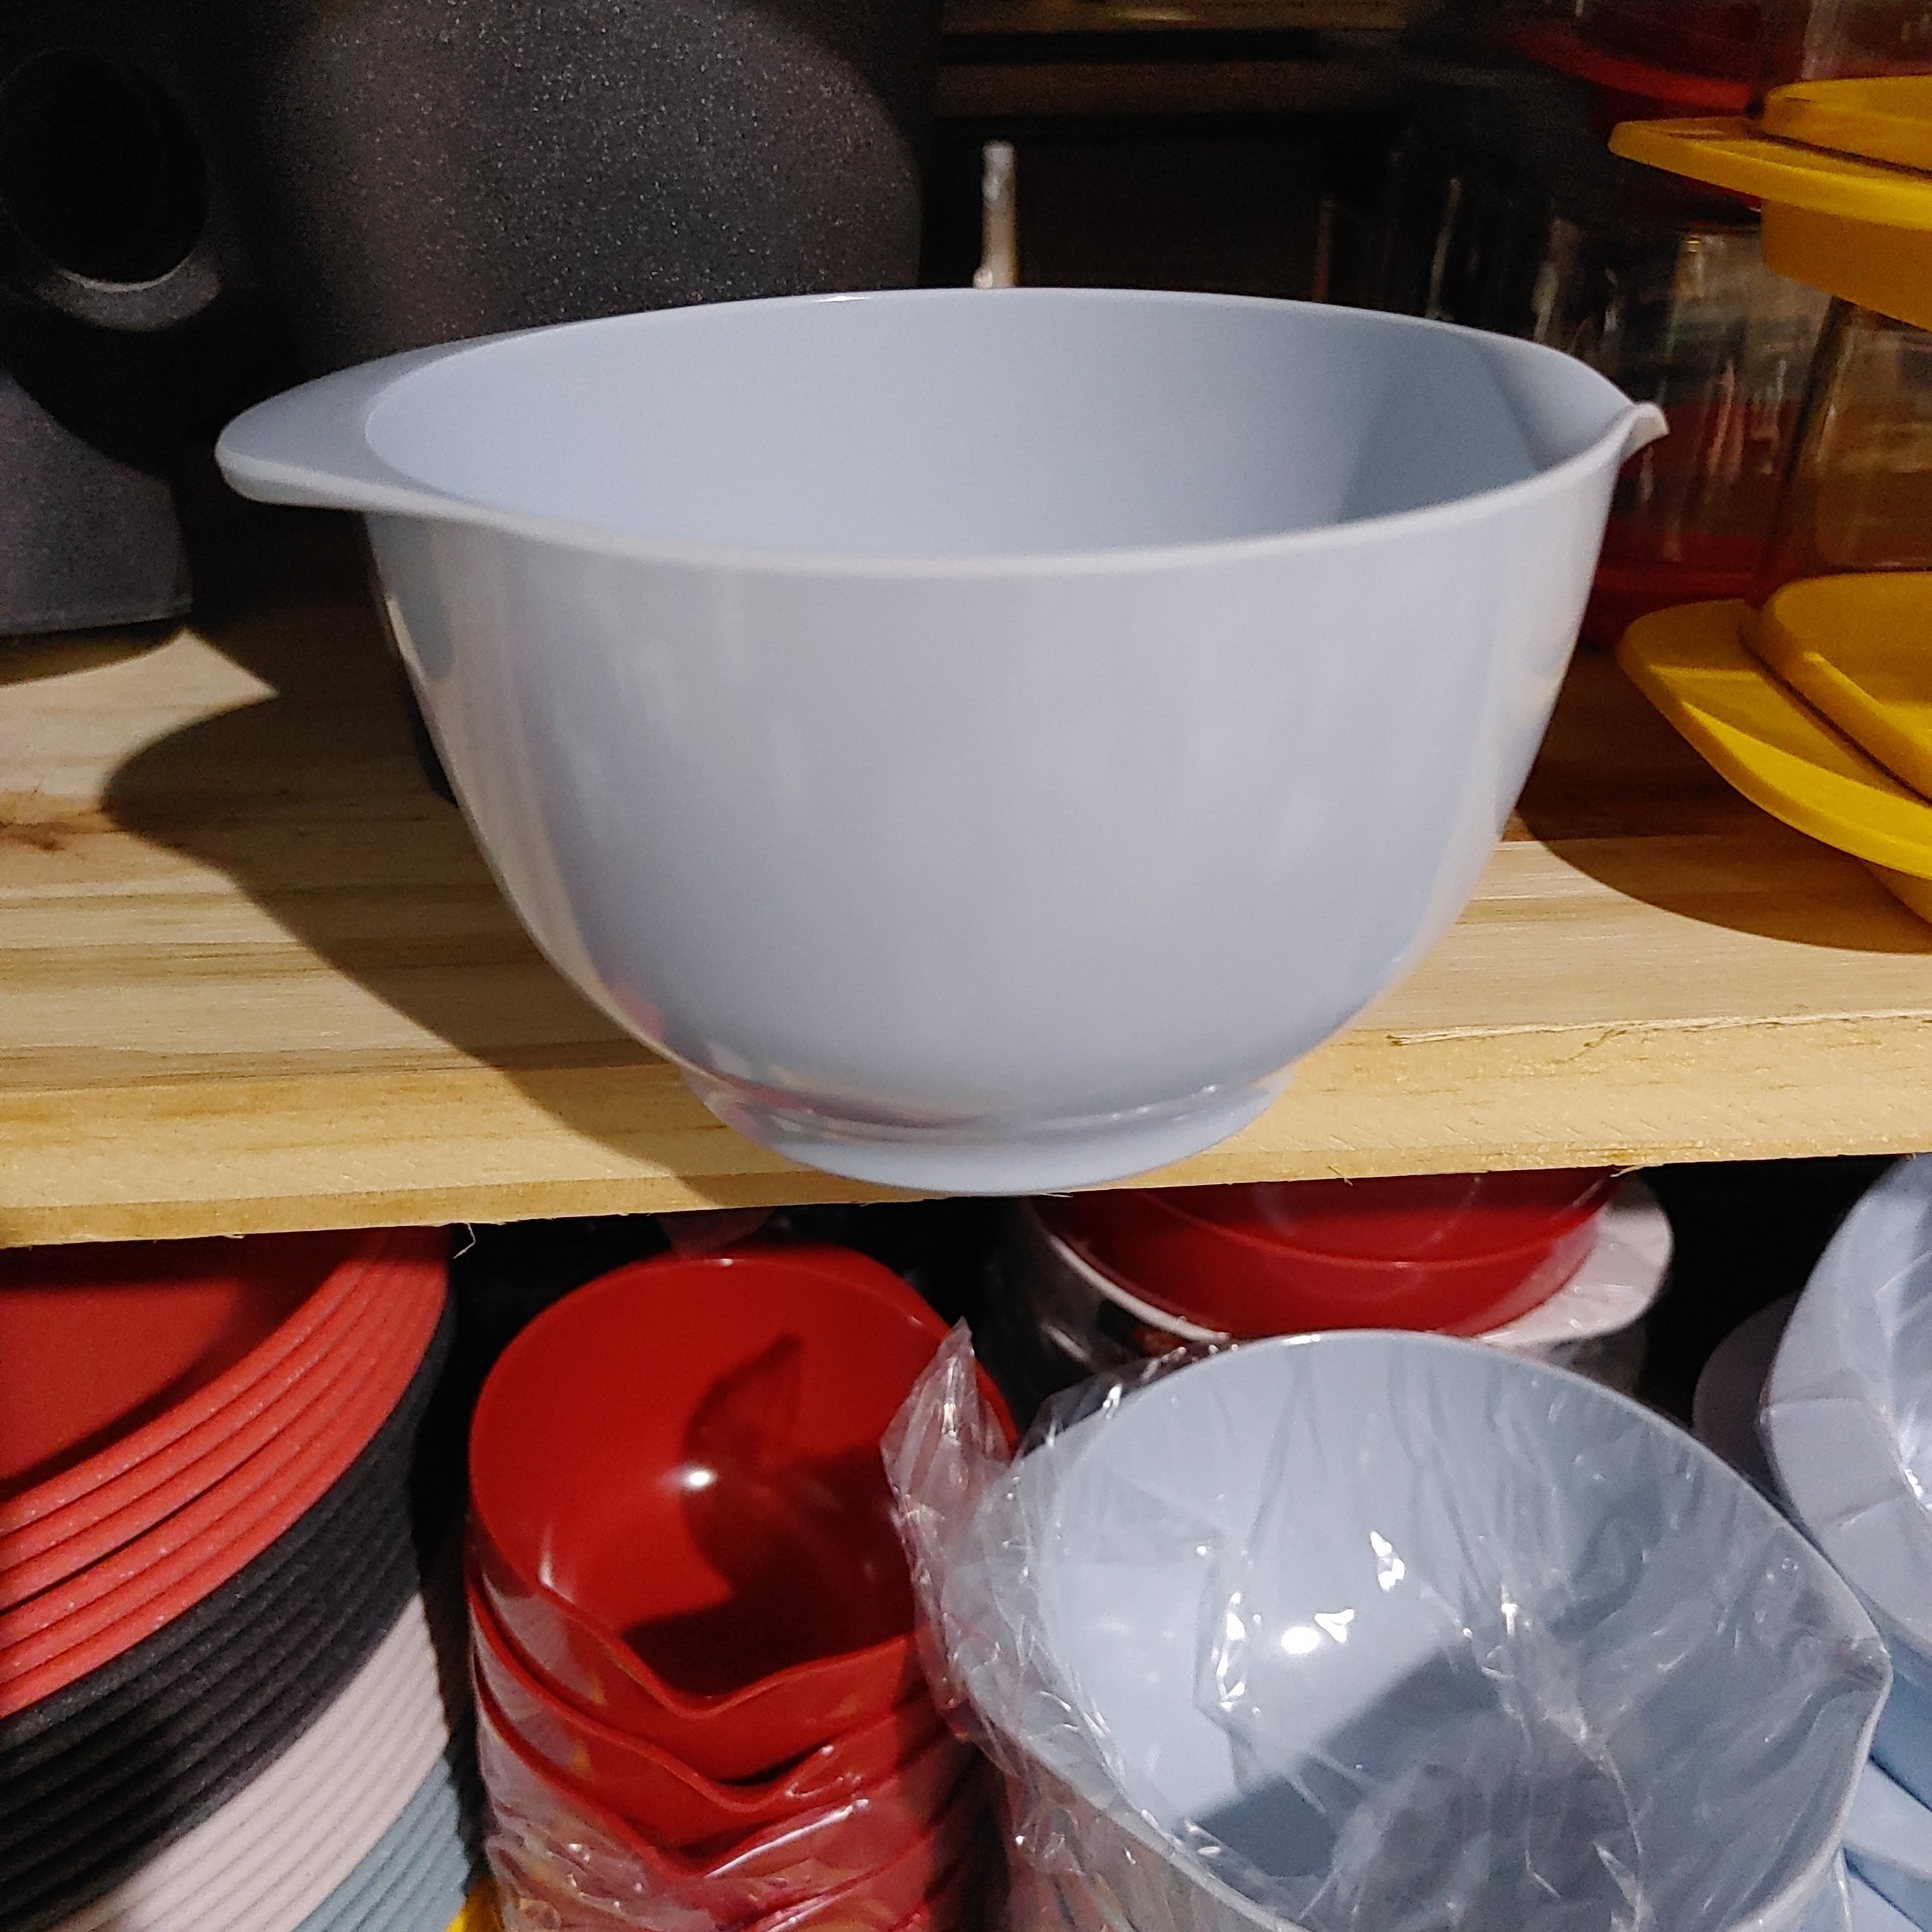 Margrethe mixing bowl 350ml/11oz